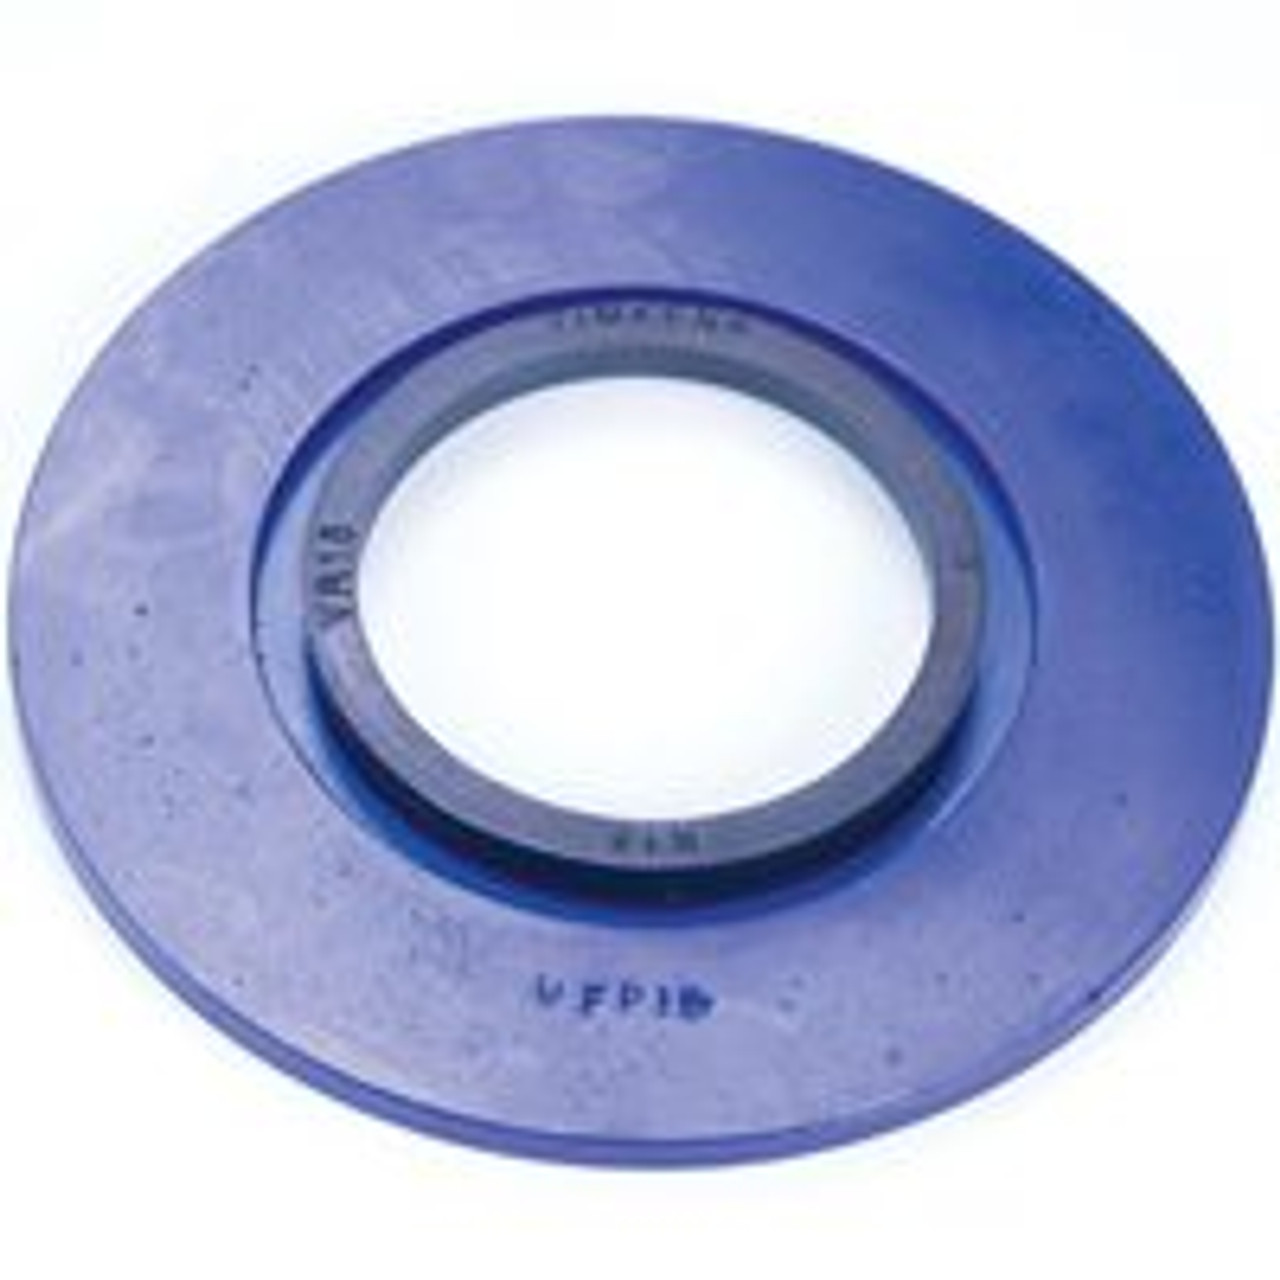 4" Timken SRB Square Flange Block Backing Plate w/V-Ring  UFP400